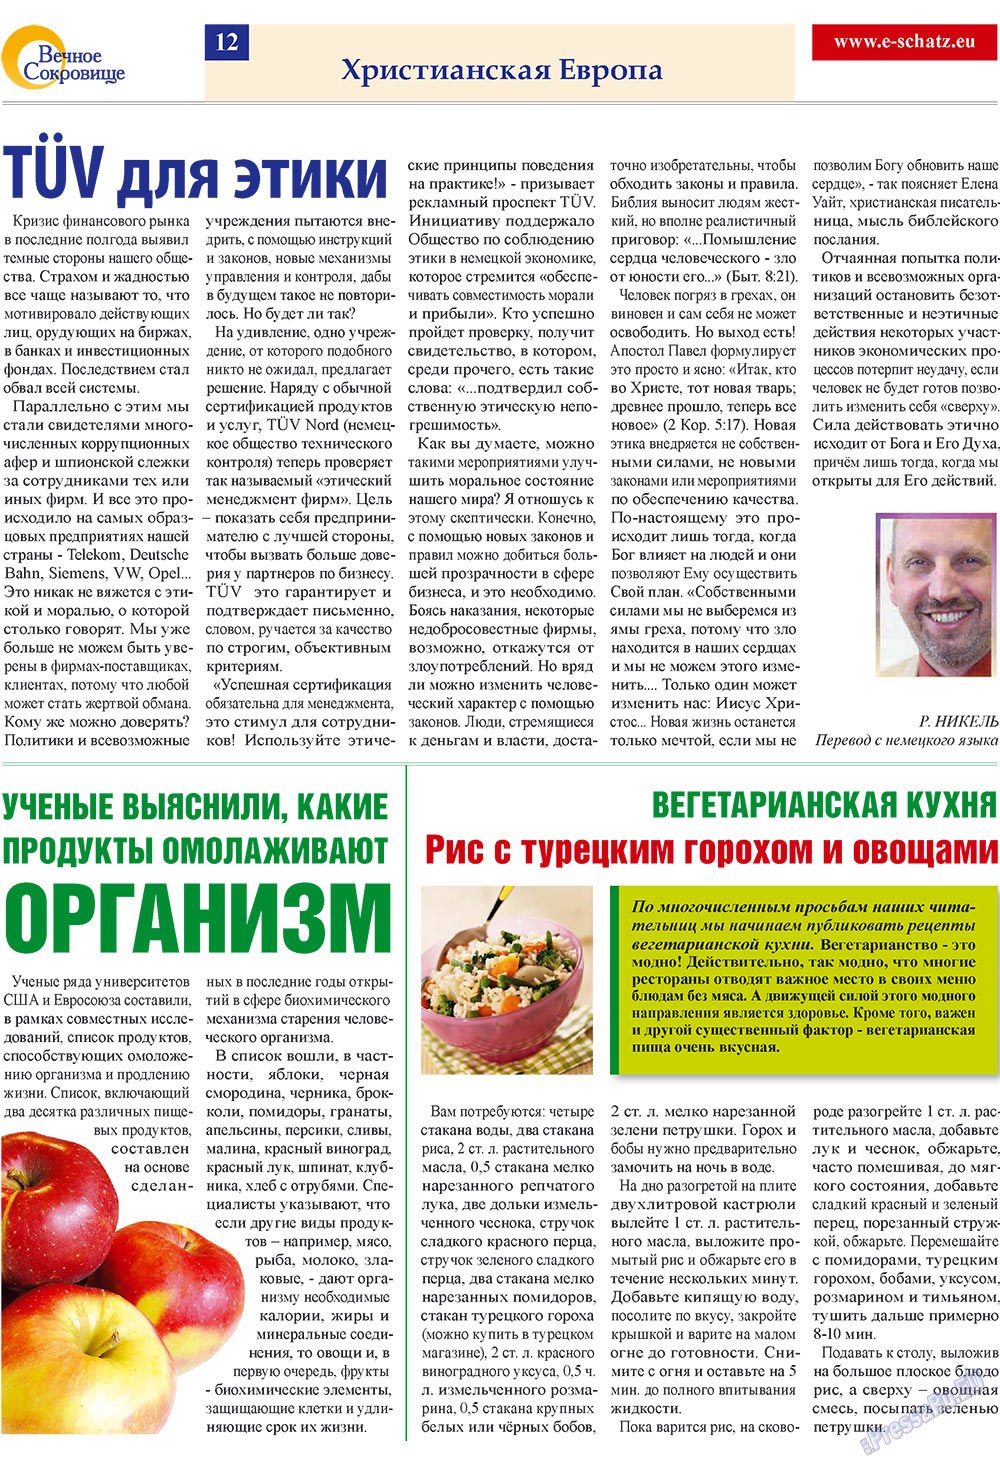 Вечное сокровище, газета. 2009 №3 стр.12